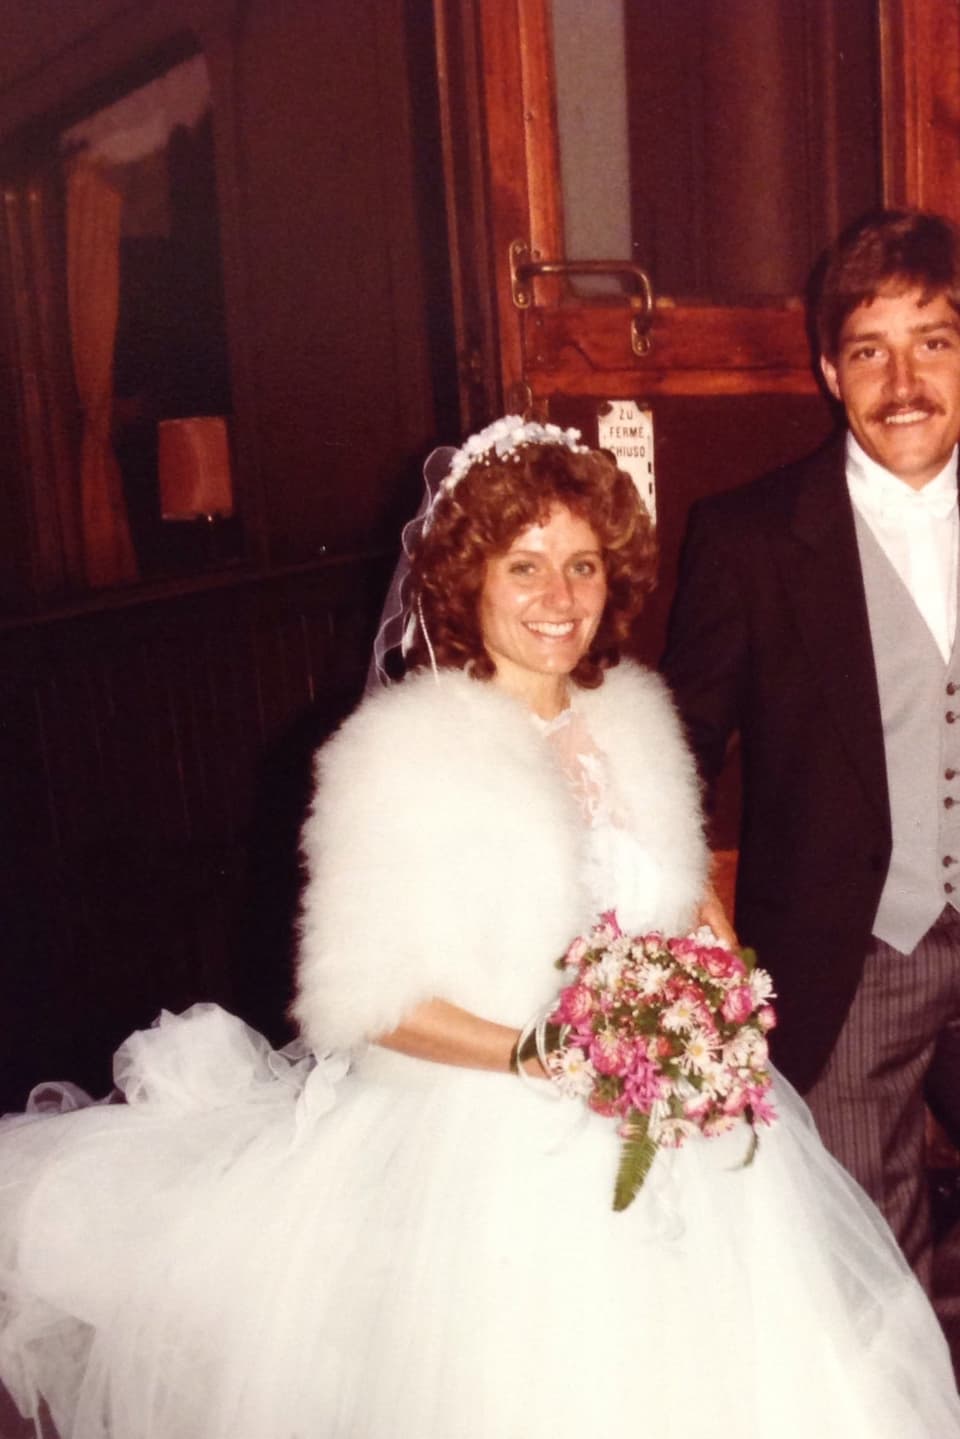 Ein lächelndes Brautpaar, sie im Kleid mit einer Schleppe aus Tüll, er im Frack, steht am Aufstieg eines alten Zugwaggons und lächelt in die Kamera.